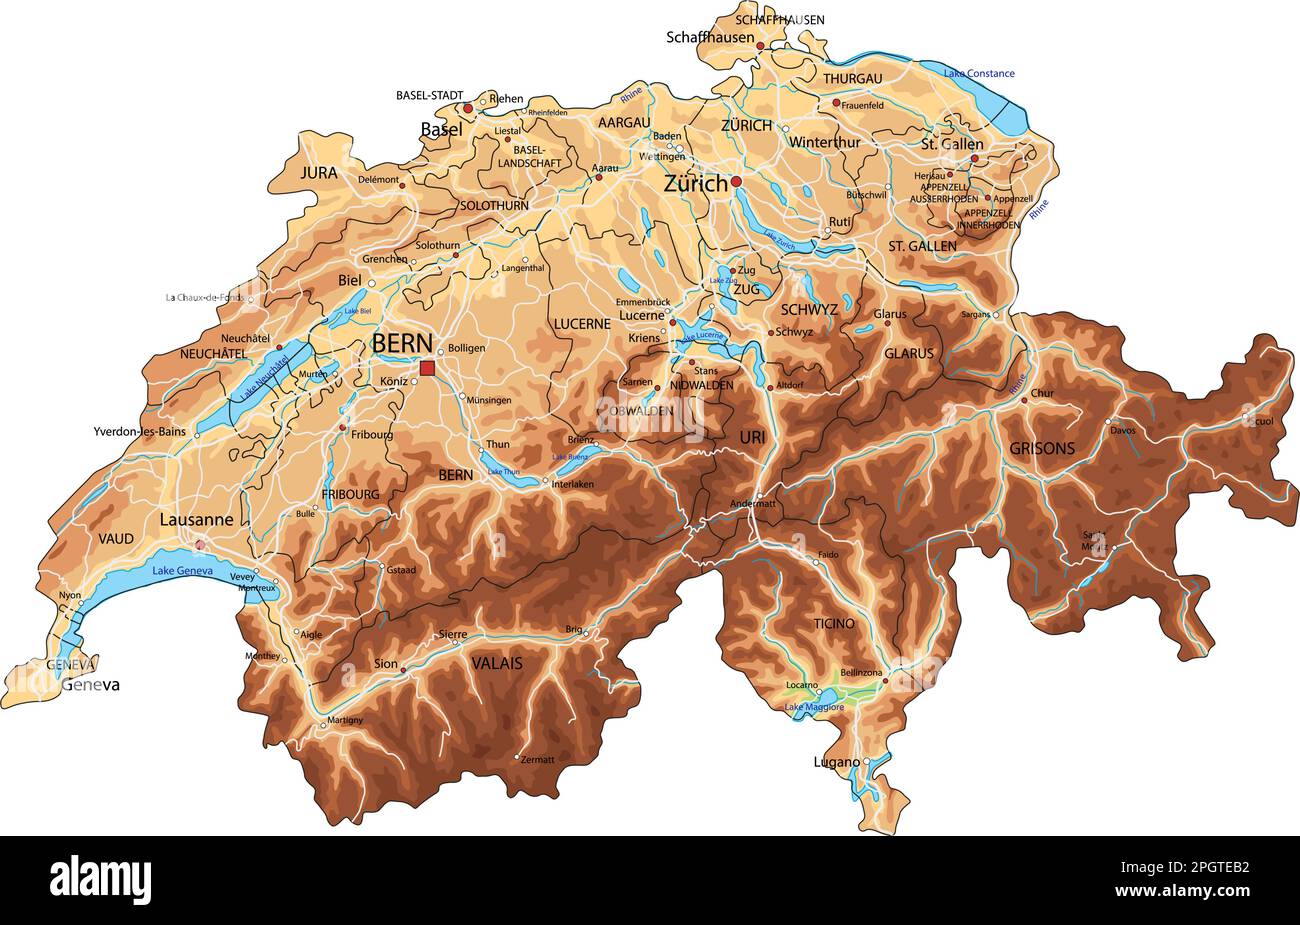 Hochdetaillierte physikalische Karte der Schweiz mit Beschriftung. Stock Vektor